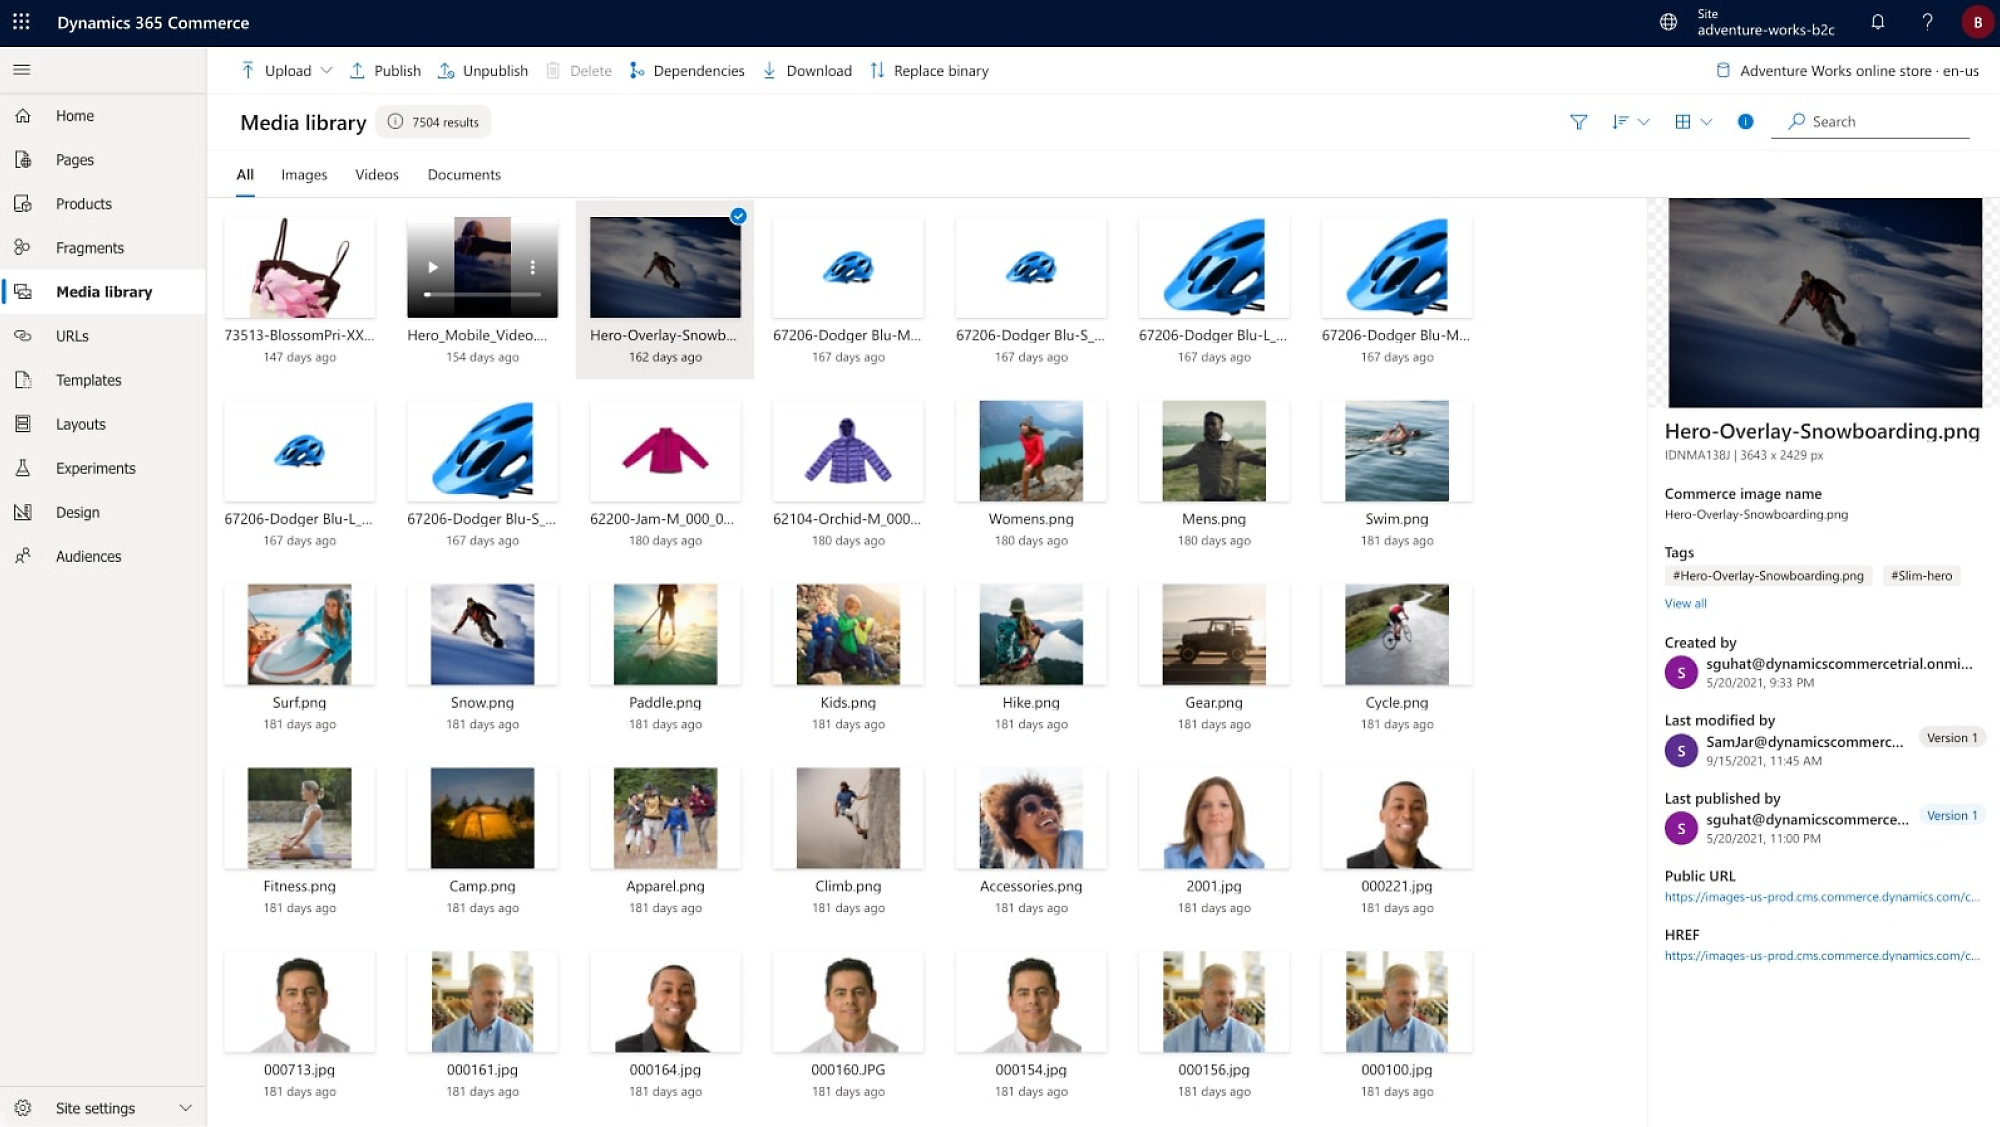 Recorte de pantalla de la interfaz de Dynamics 365 Commerce con varias opciones y archivos multimedia enumerados.